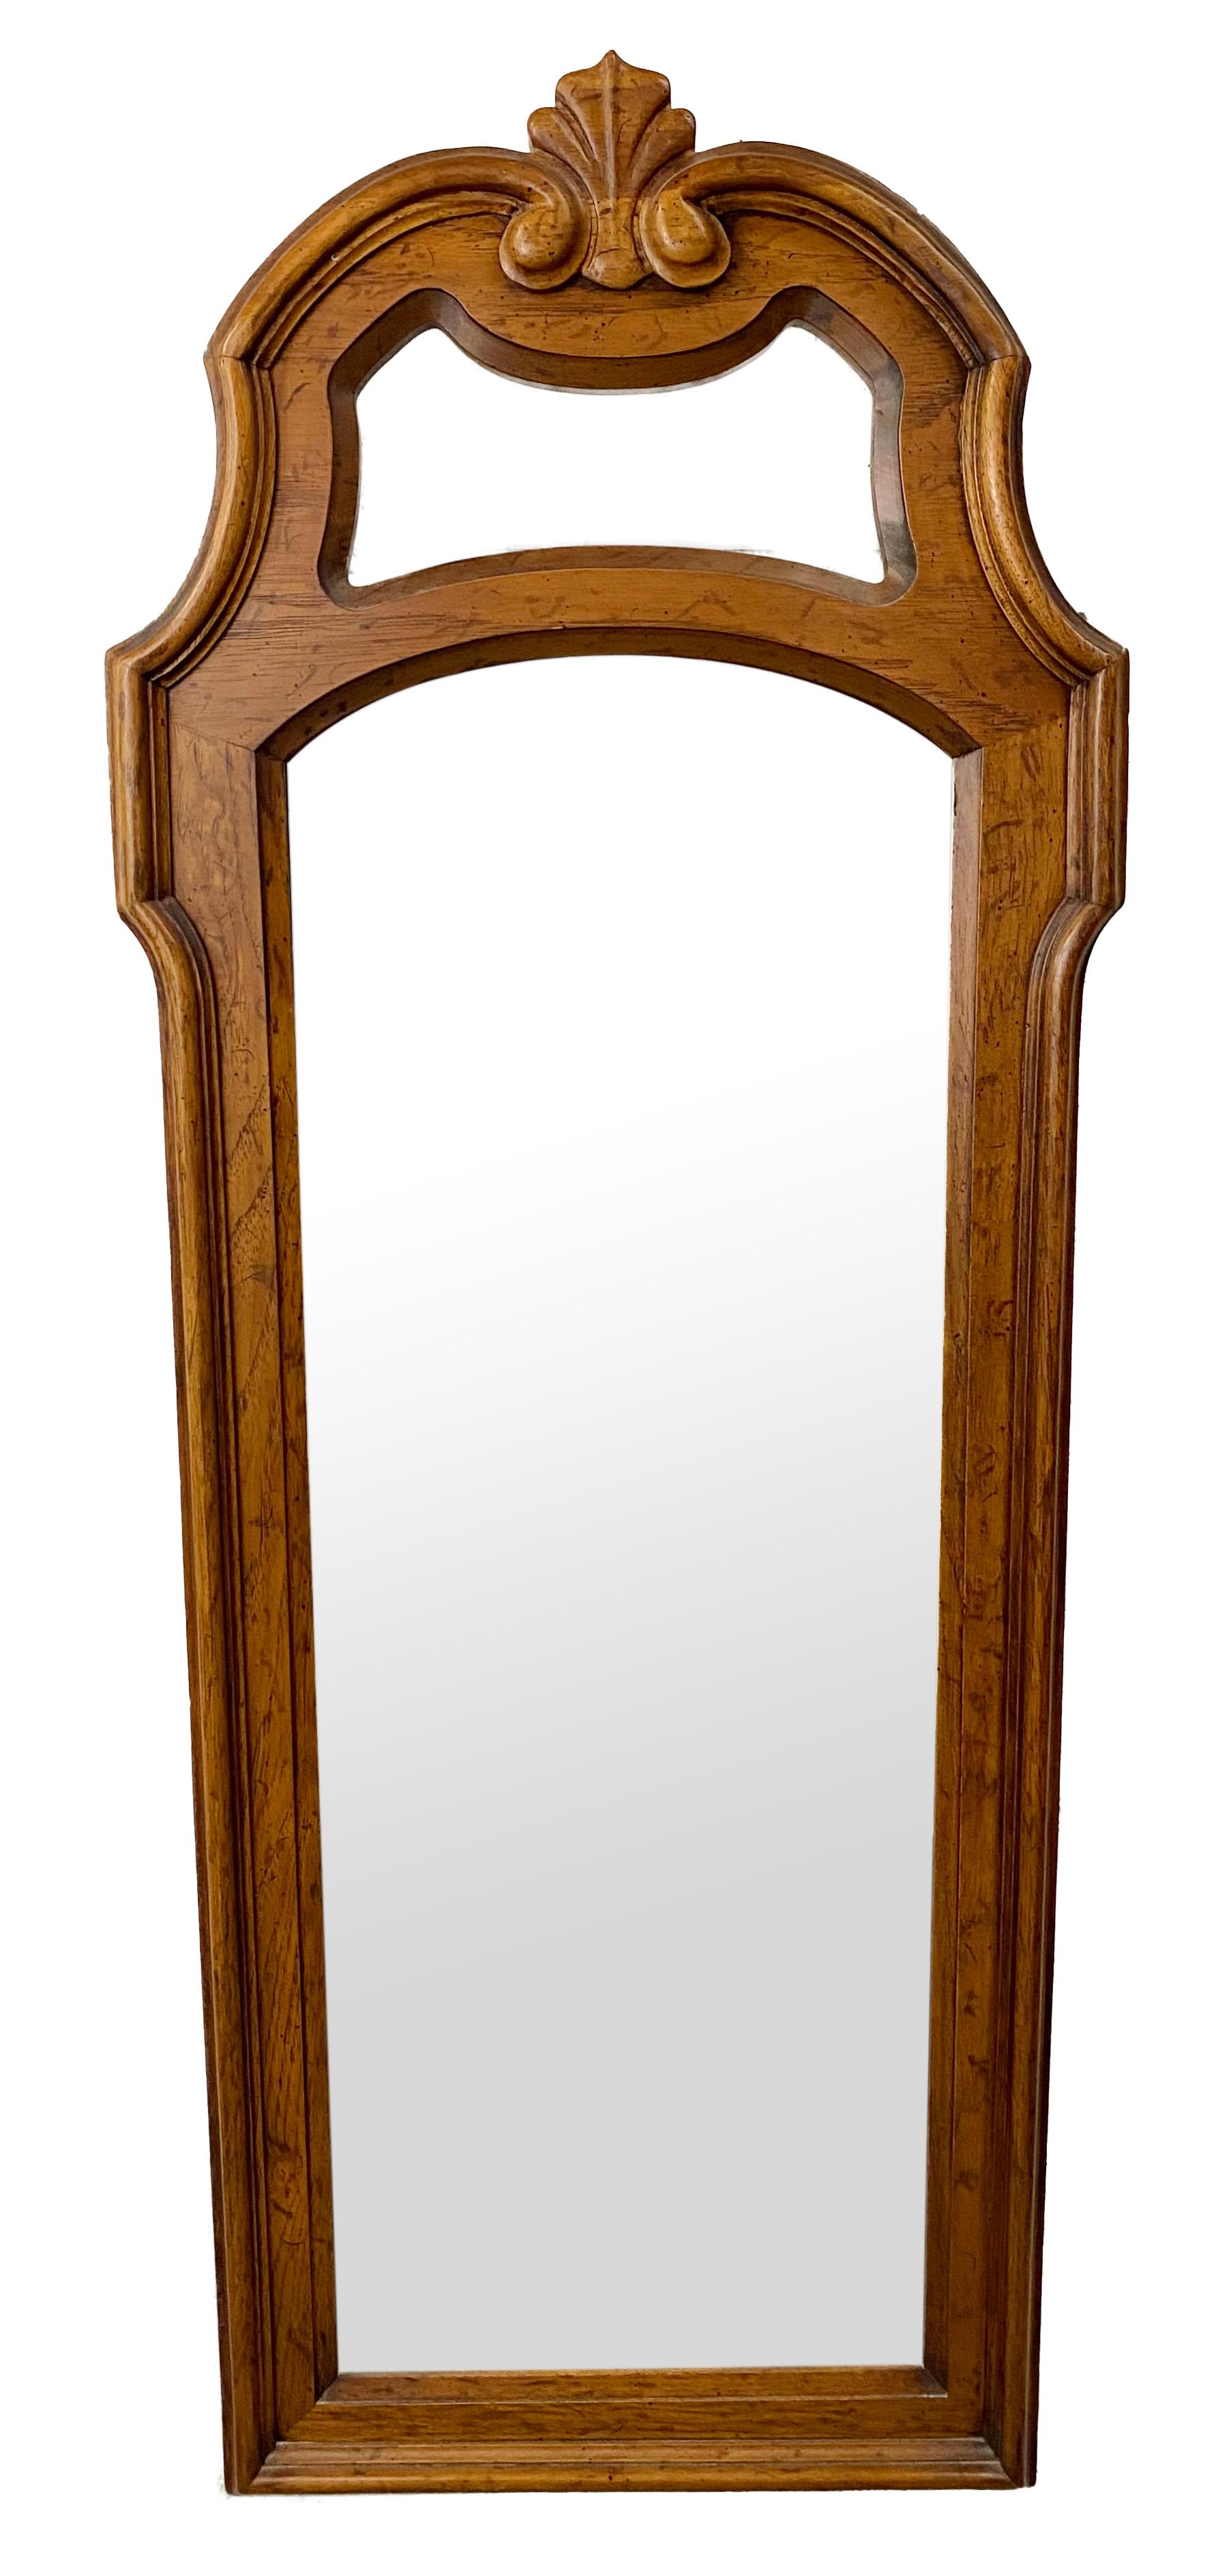 Une paire de grands miroirs muraux de style provincial français par Drexel Heritage. Le cadre des miroirs de qualité est finement sculpté dans du bois de pin présentant un magnifique grain naturel. Les miroirs sont ornés d'une grande acanthe dans la